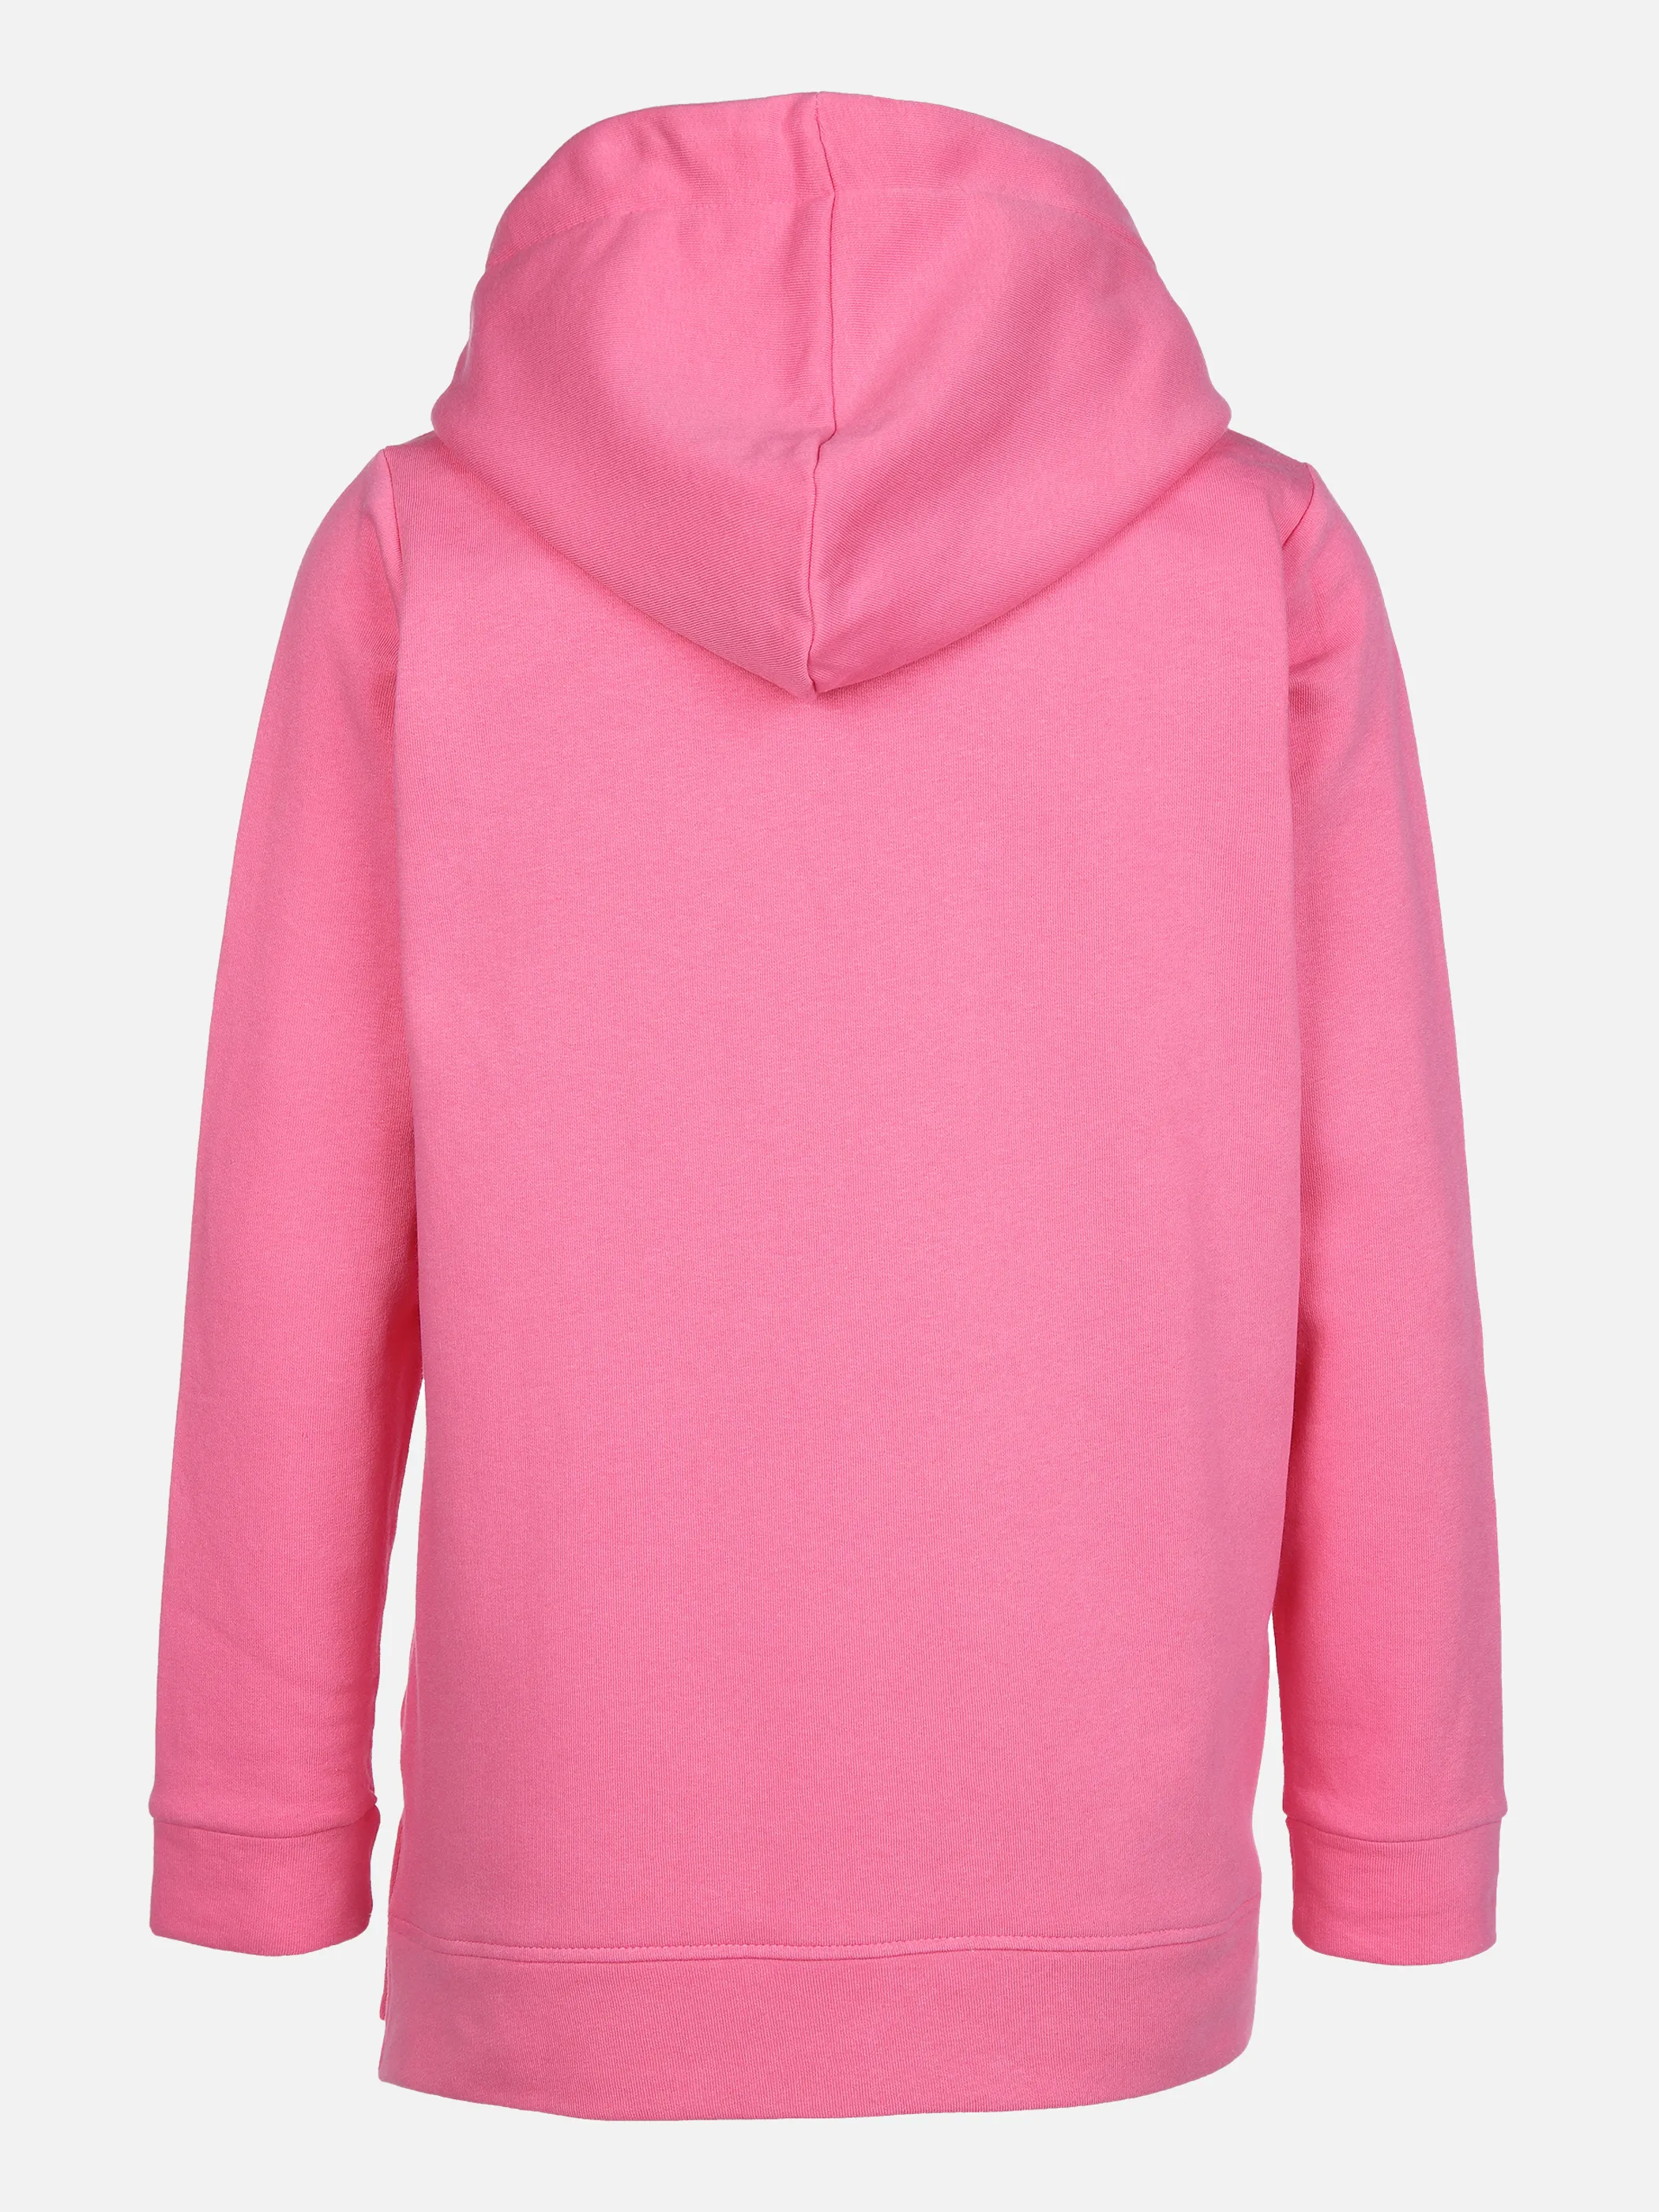 Sure Da-Sweatshirt mit Print Pink 861308 PINK 2